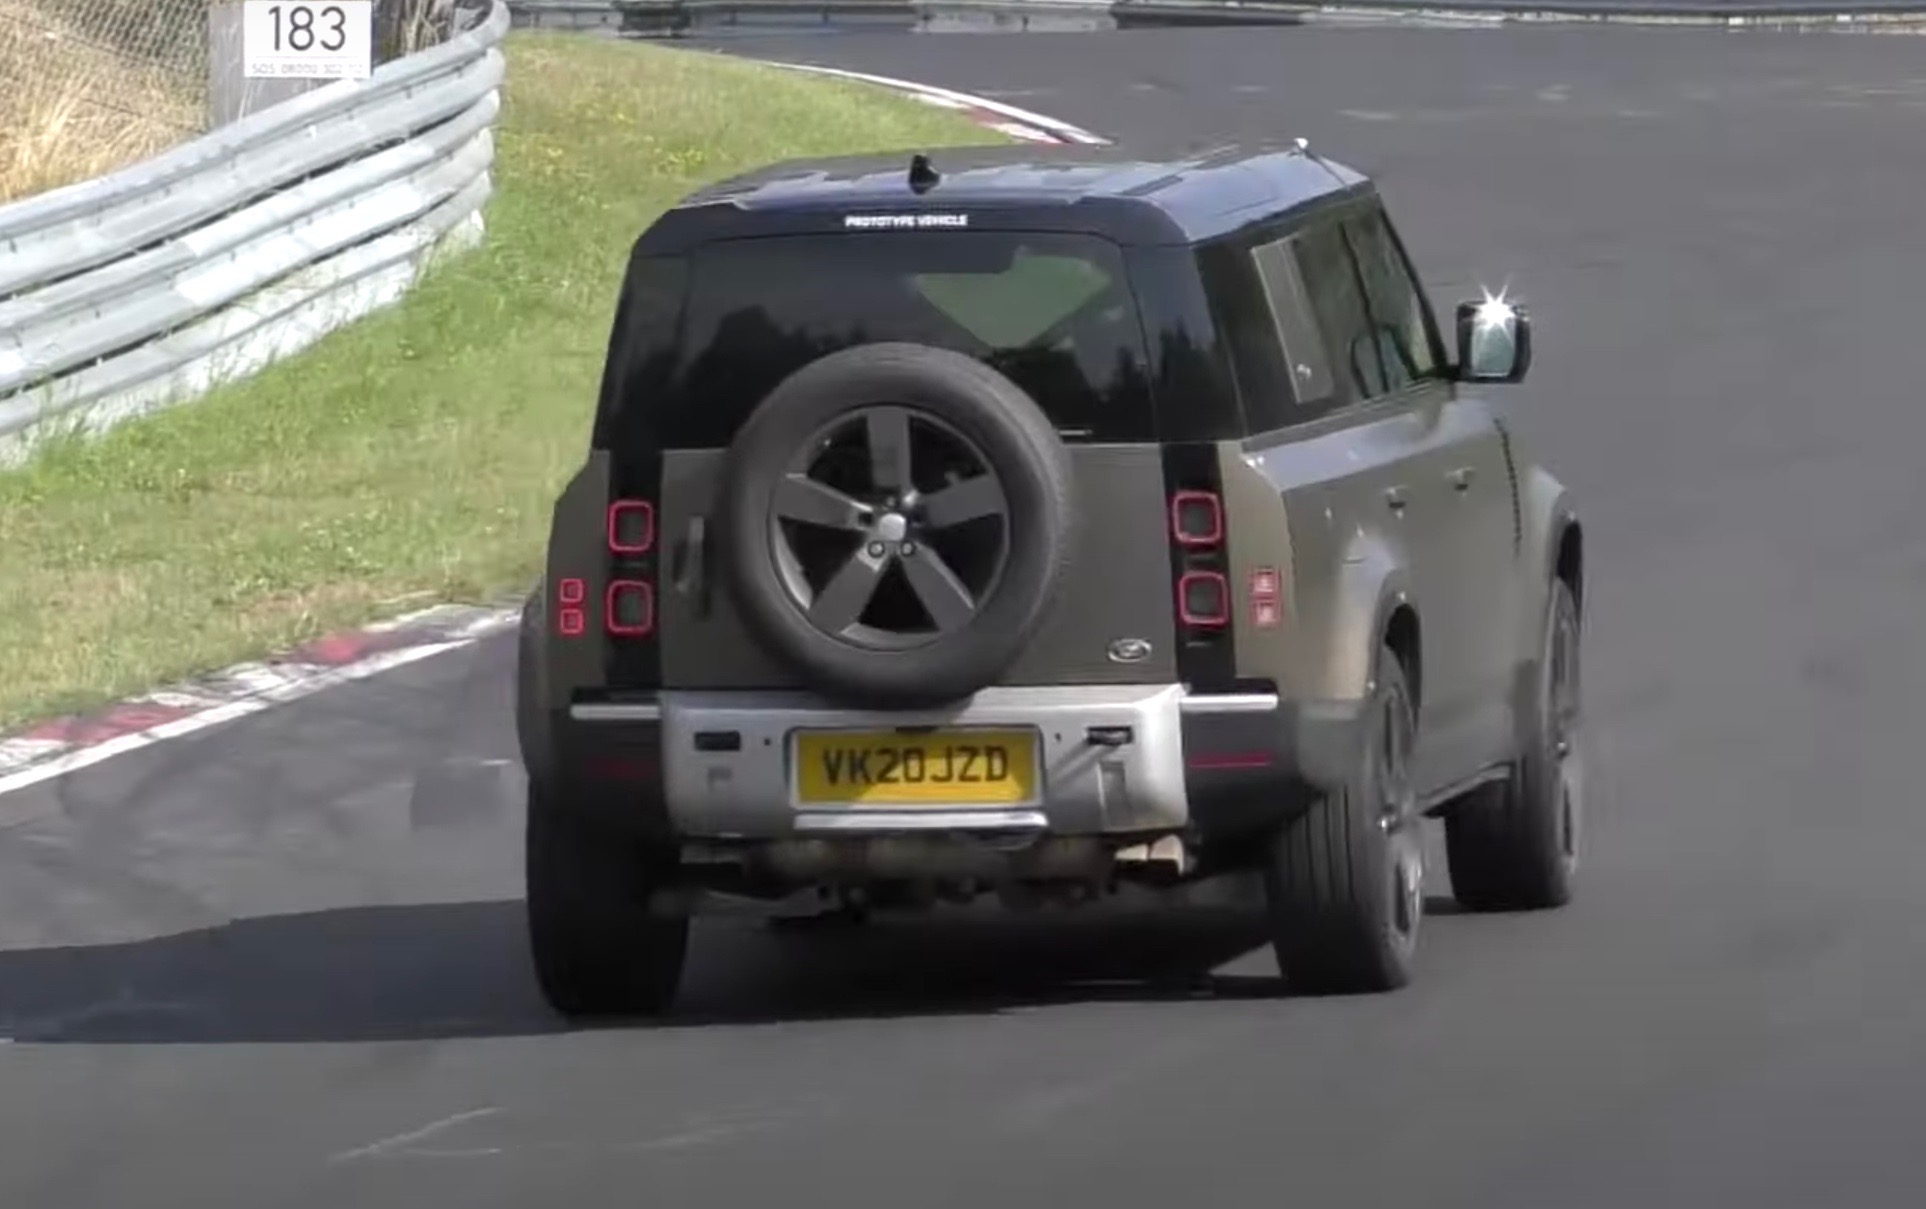 V8 2021 Land Rover Defender test mule spotted (video ...